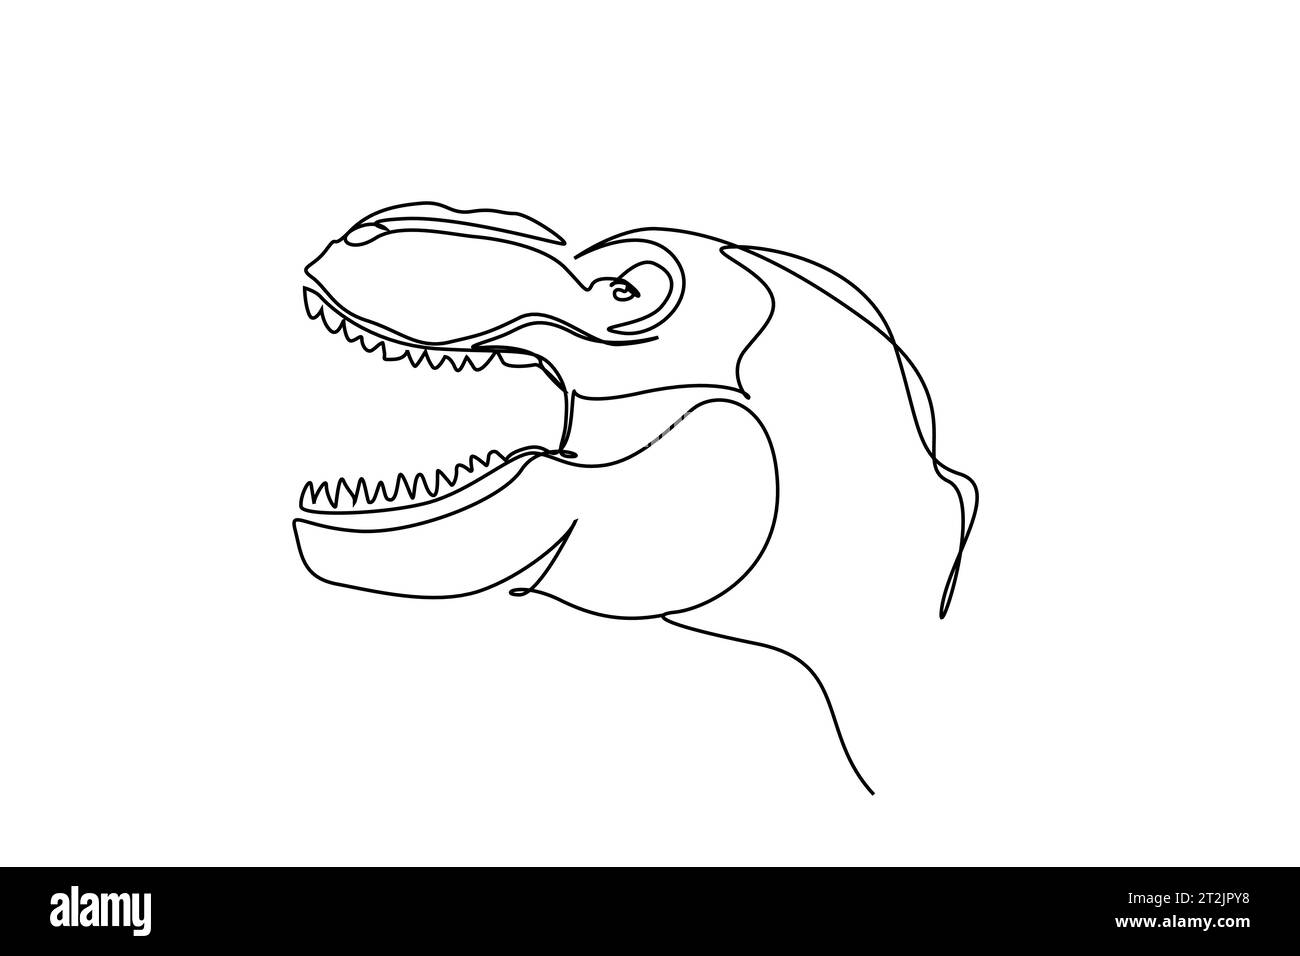 dinosaur monster animal head teeth dangerous line art Stock Vector